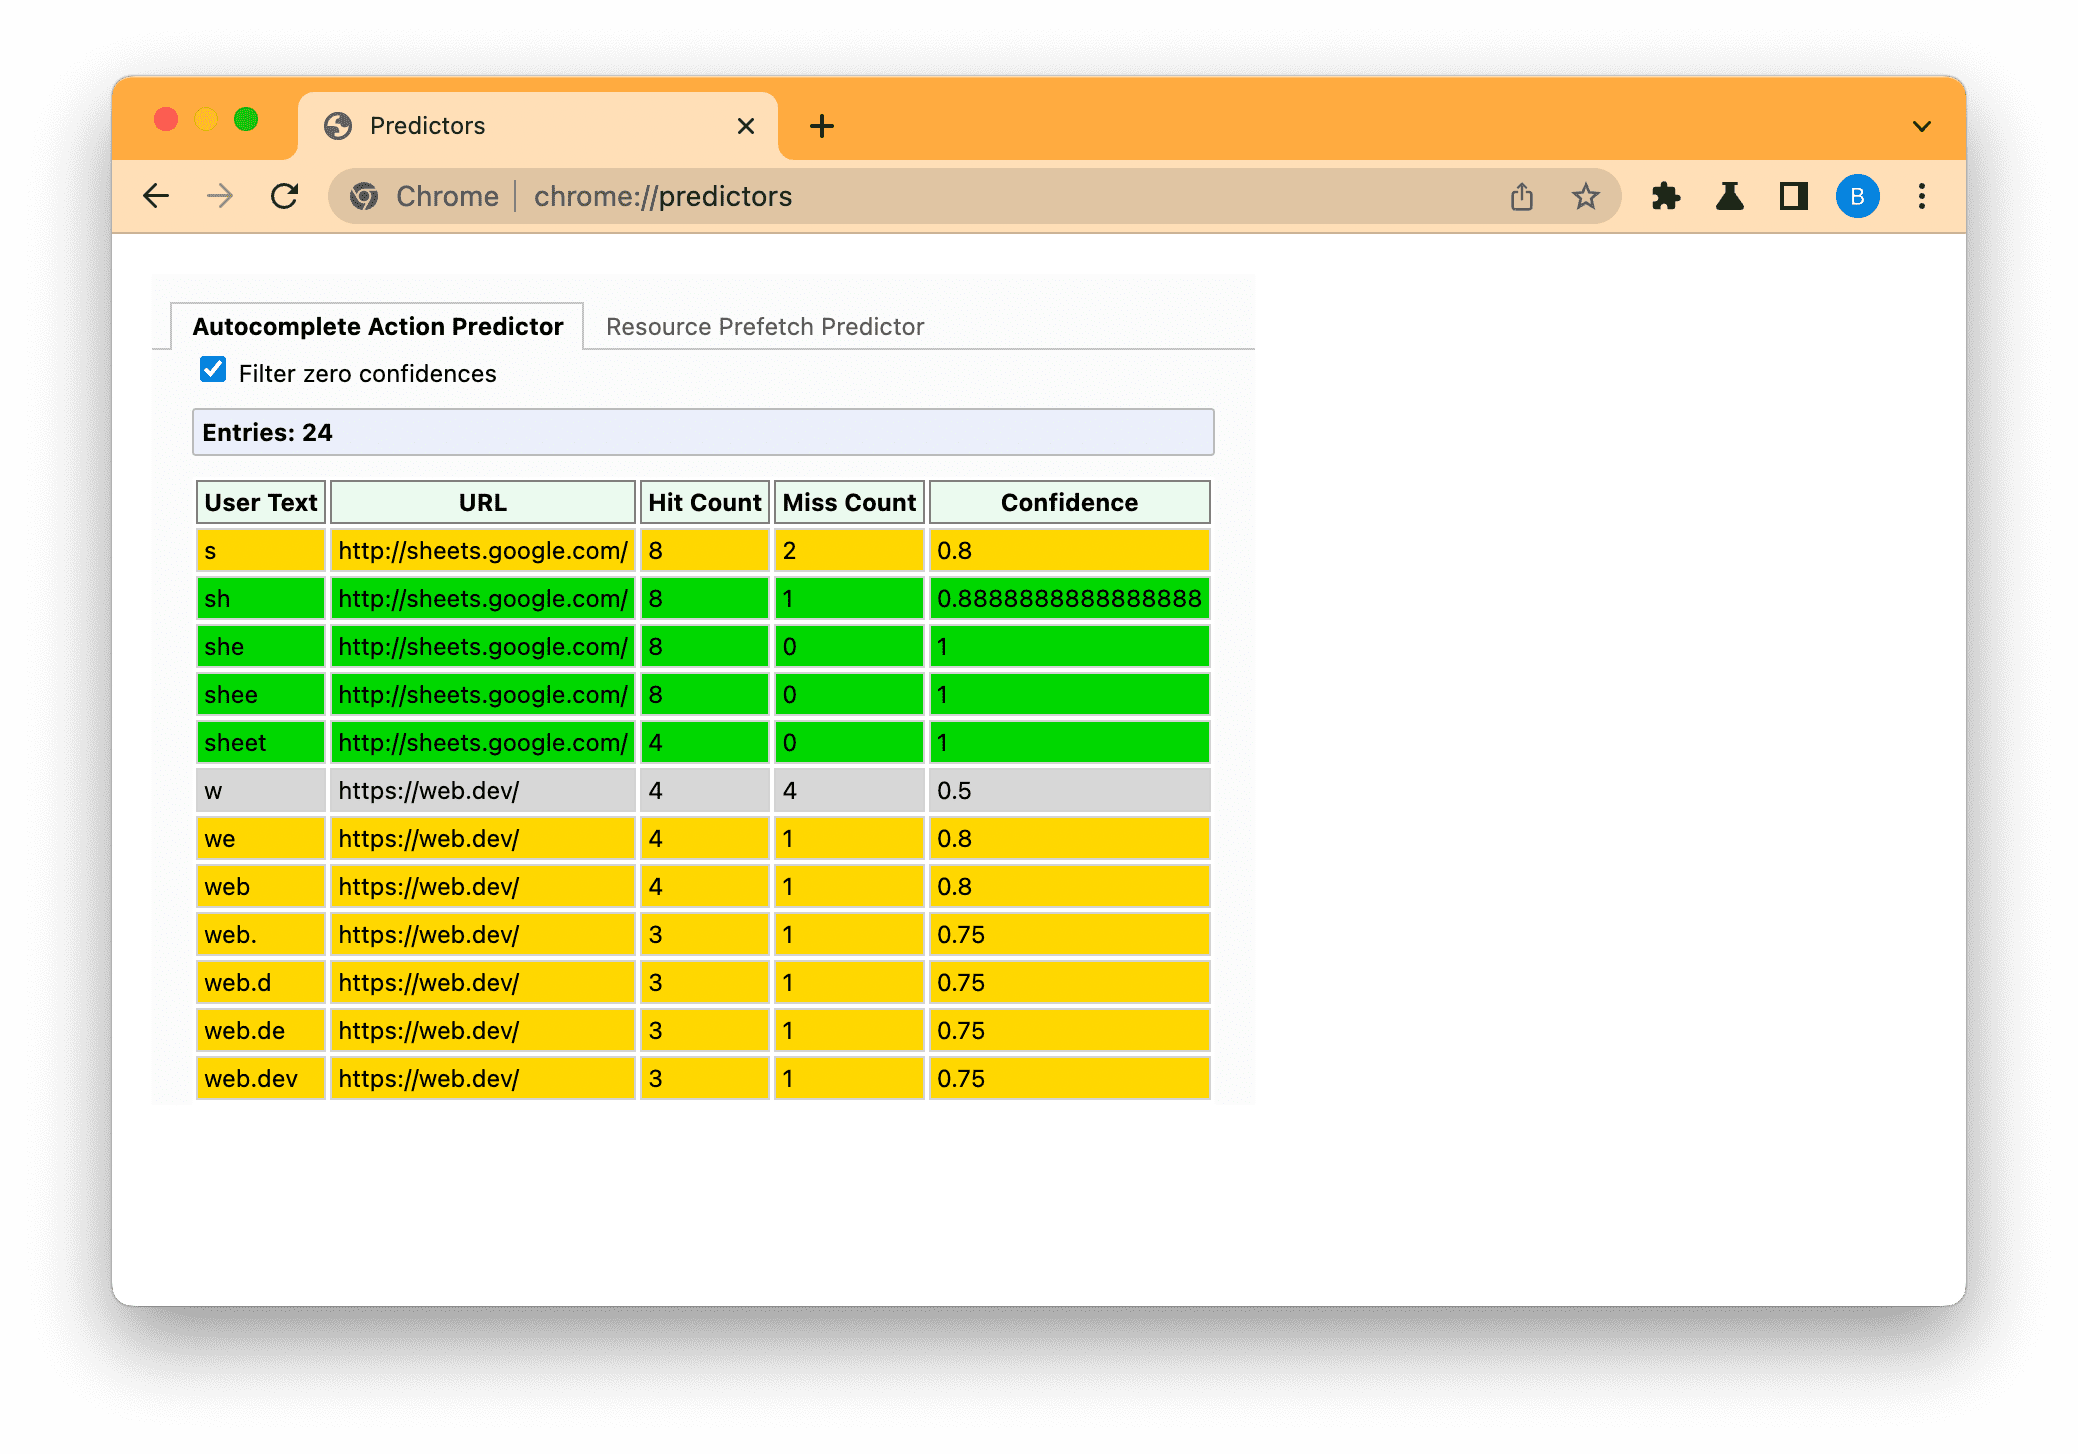 डाले गए टेक्स्ट के आधार पर, Chrome के अनुमान लगाने वाले पेज का स्क्रीनशॉट, कम (स्लेटी), मीडियम (ऐंबर), और ज़्यादा (हरा) अनुमान दिखाने के लिए फ़िल्टर किया गया है.